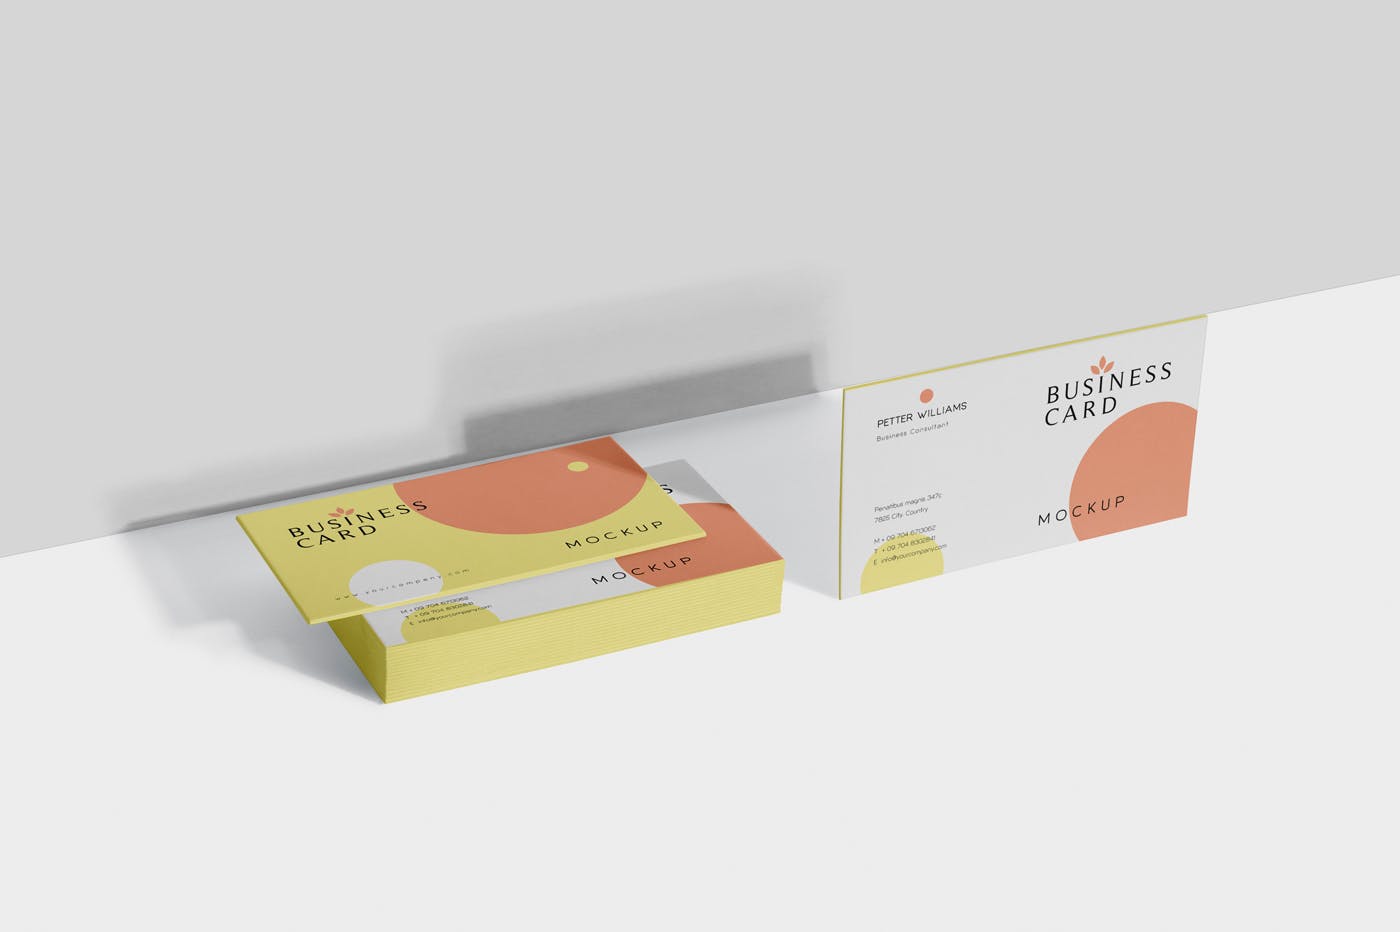 创意企业名片设计阴影效果图蚂蚁素材精选 Business Card Mock-Ups插图(4)